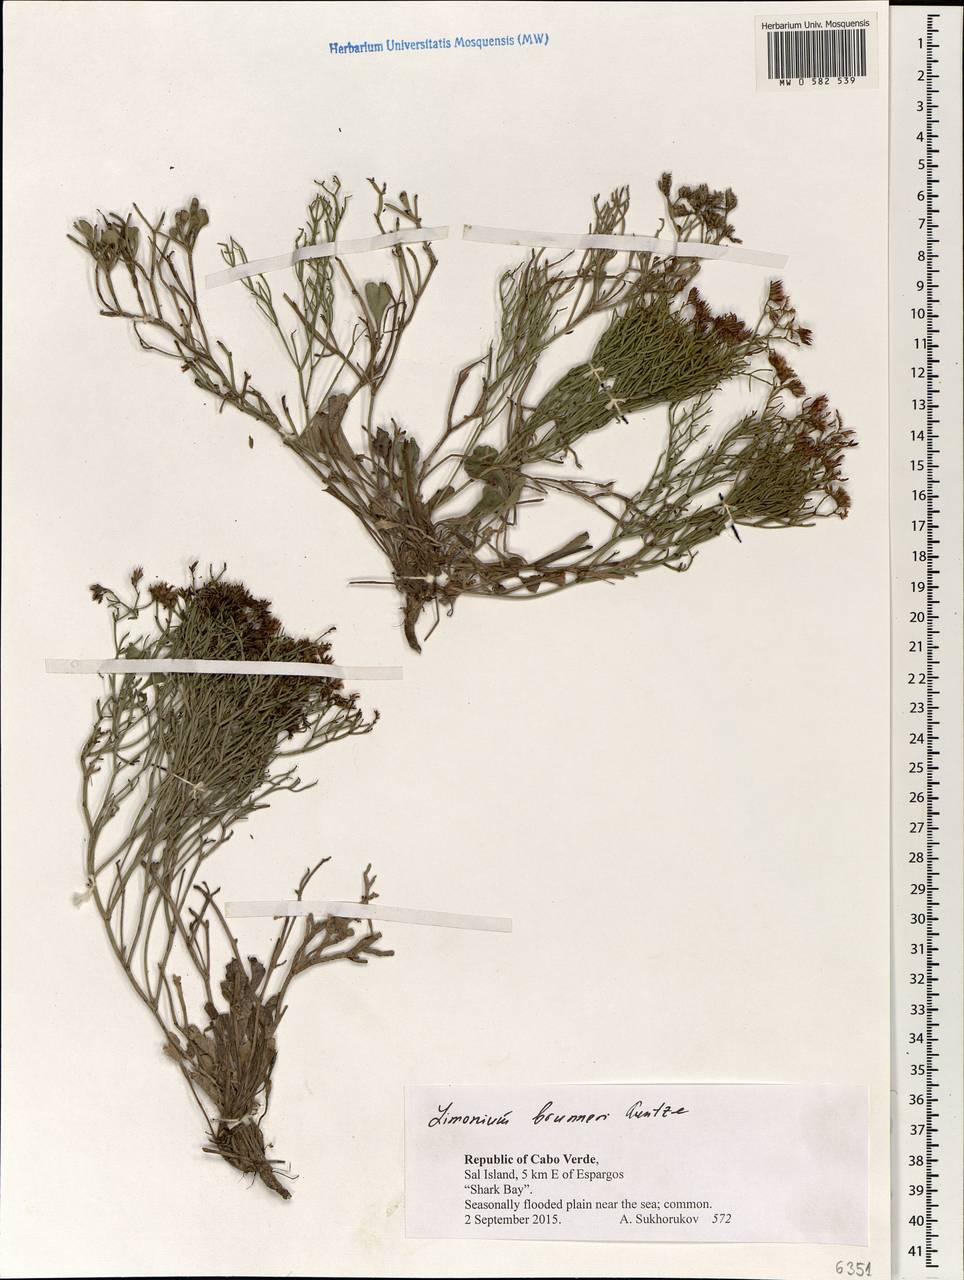 Limonium brunneri (Webb ex Boiss.) Kuntze, Africa (AFR) (Cape Verde)